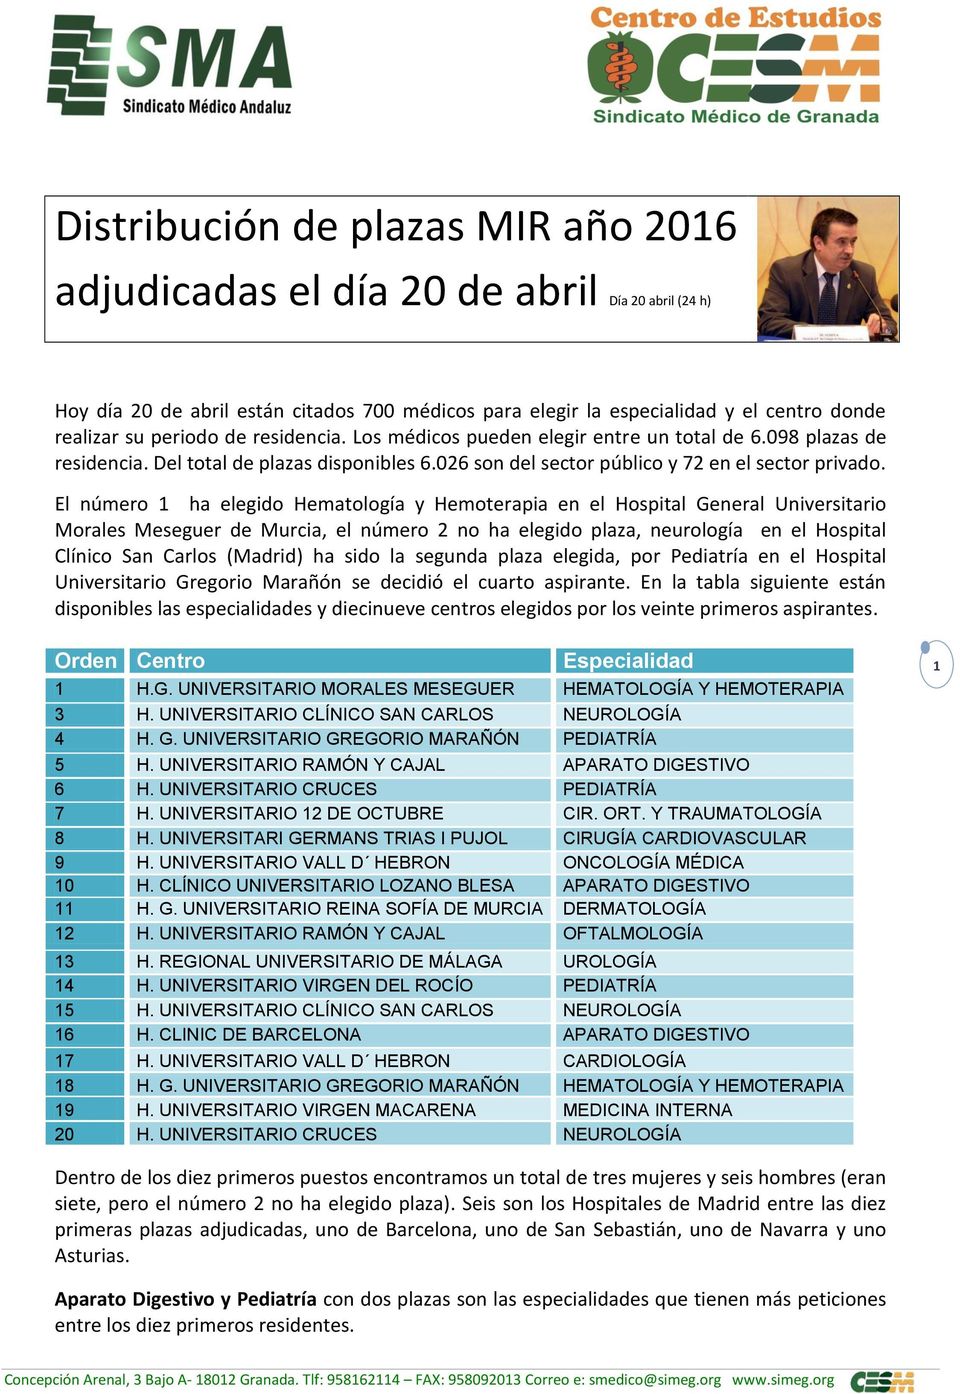 El número 1 ha elegido Hematología y Hemoterapia en el Hospital General Universitario Morales Meseguer de Murcia, el número 2 no ha elegido plaza, neurología en el Hospital Clínico San Carlos